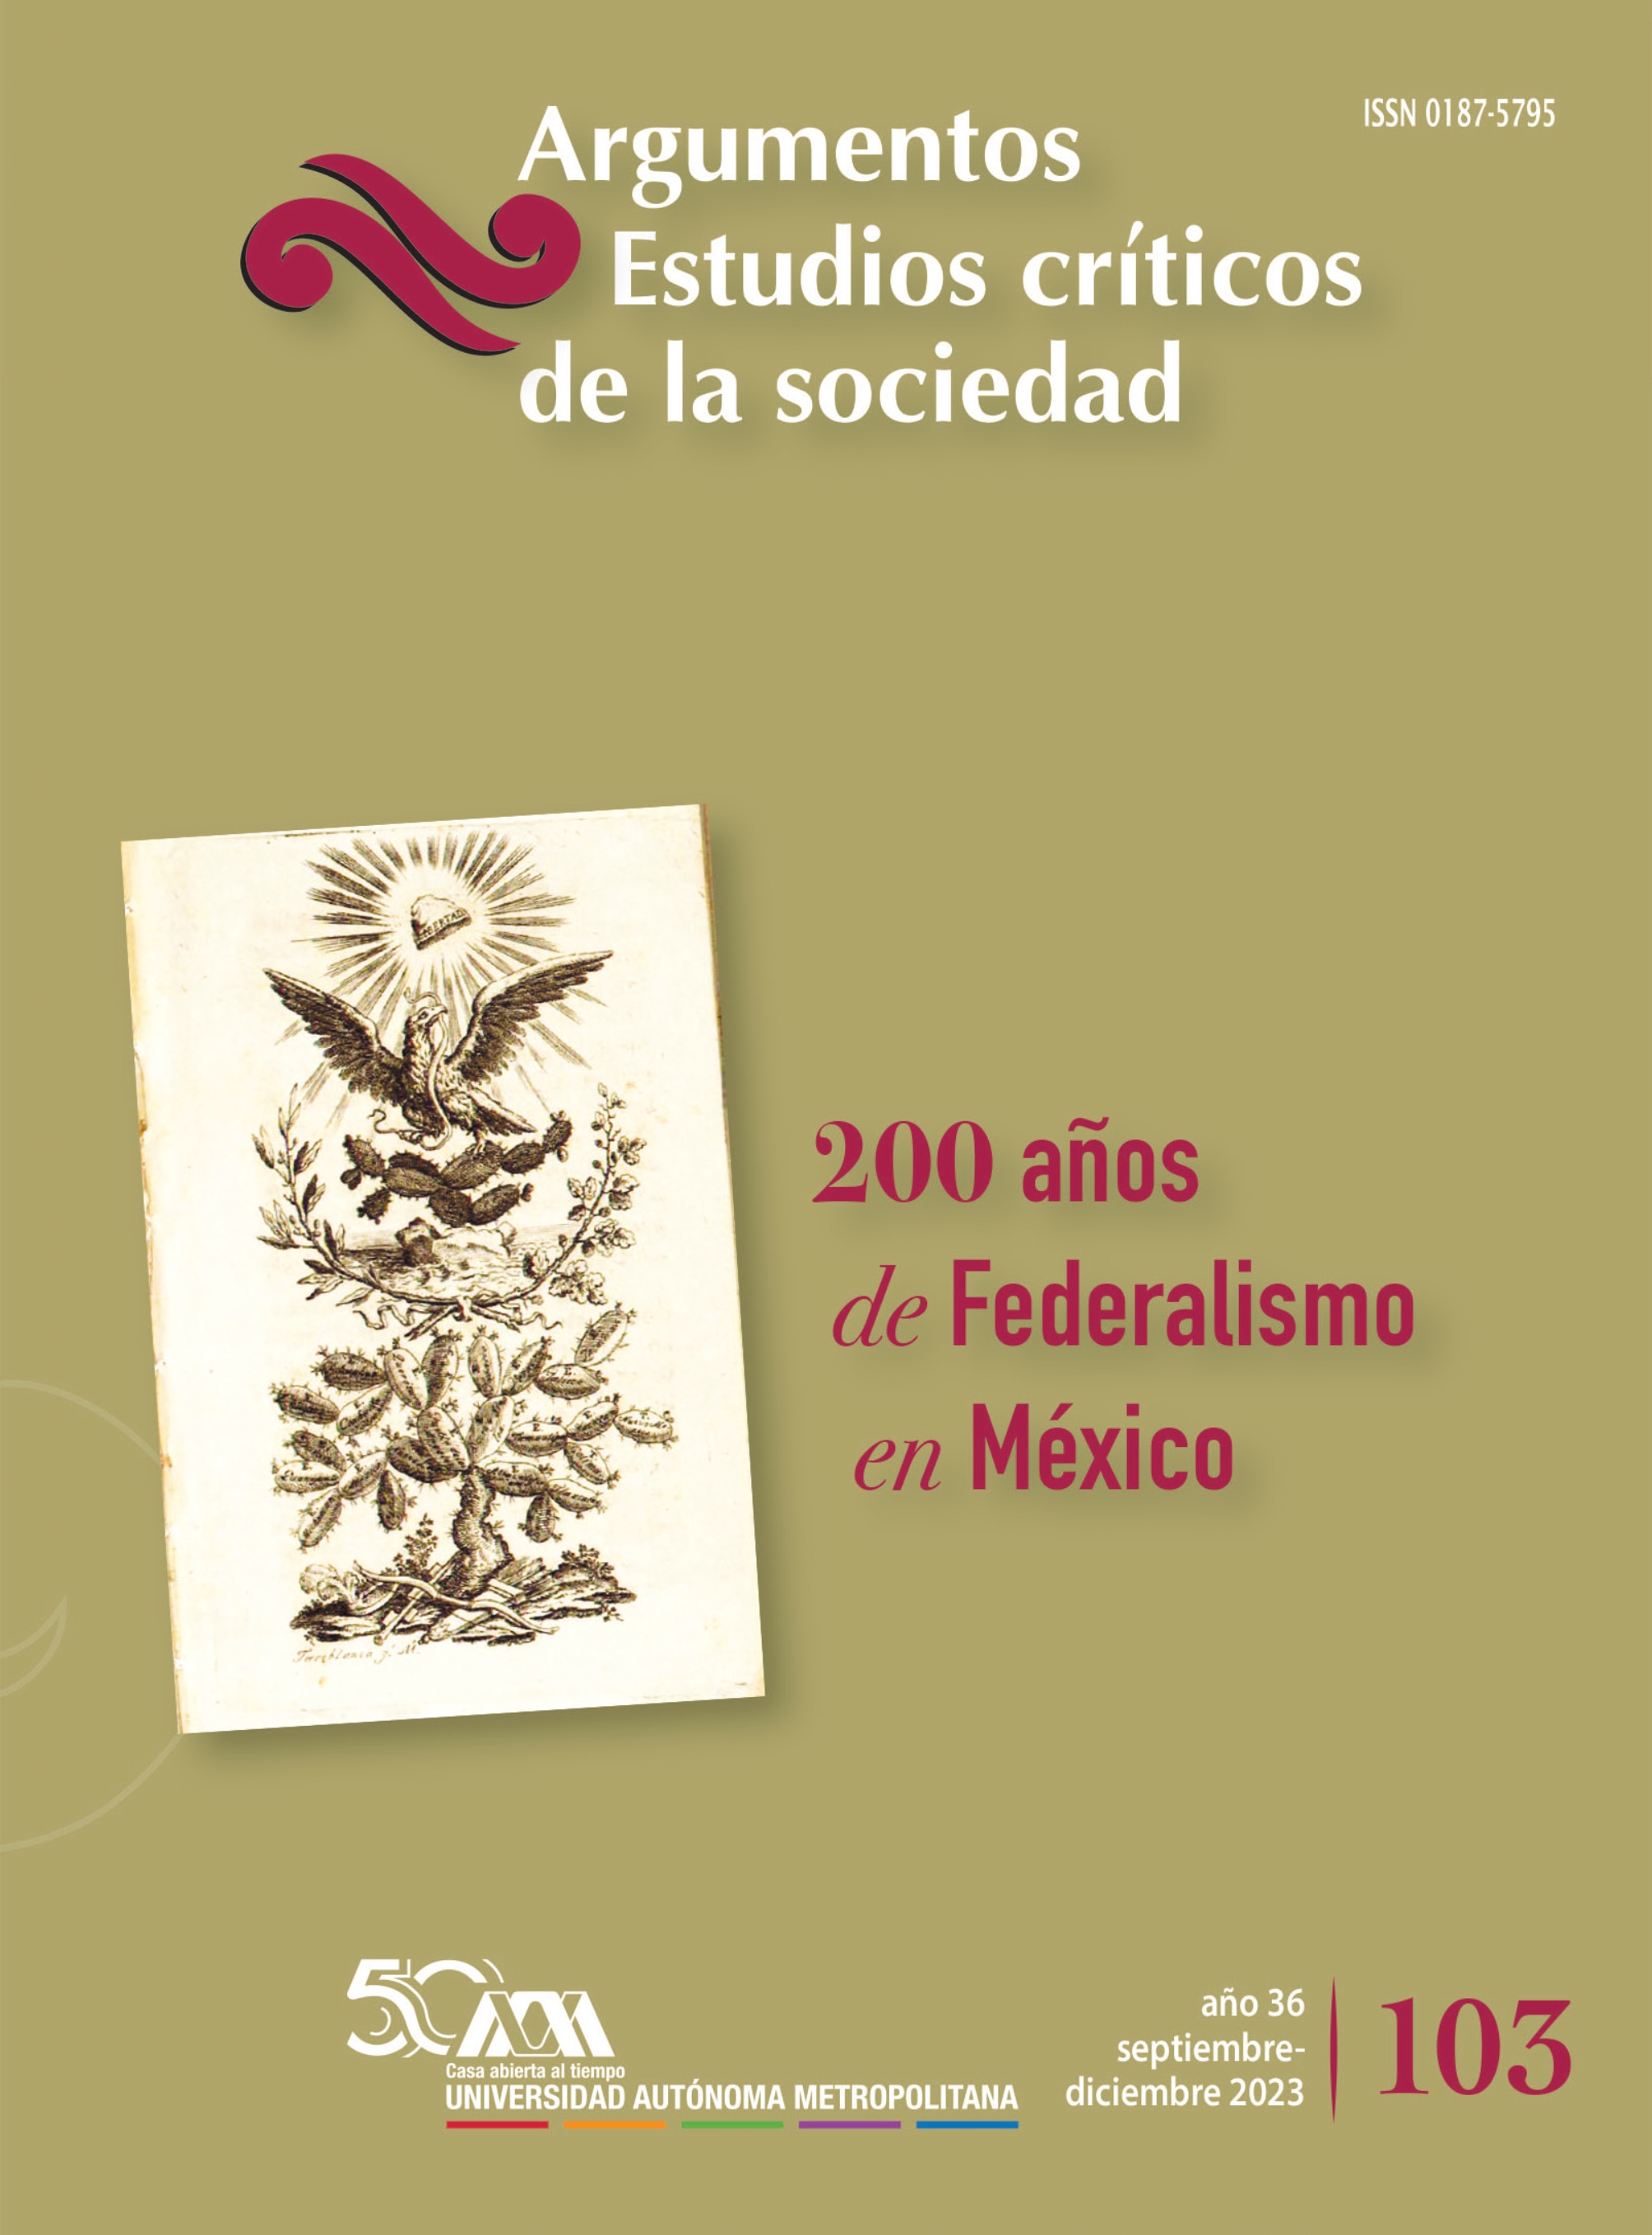 					View Núm. 103: "200 años de federalismo en México"
				